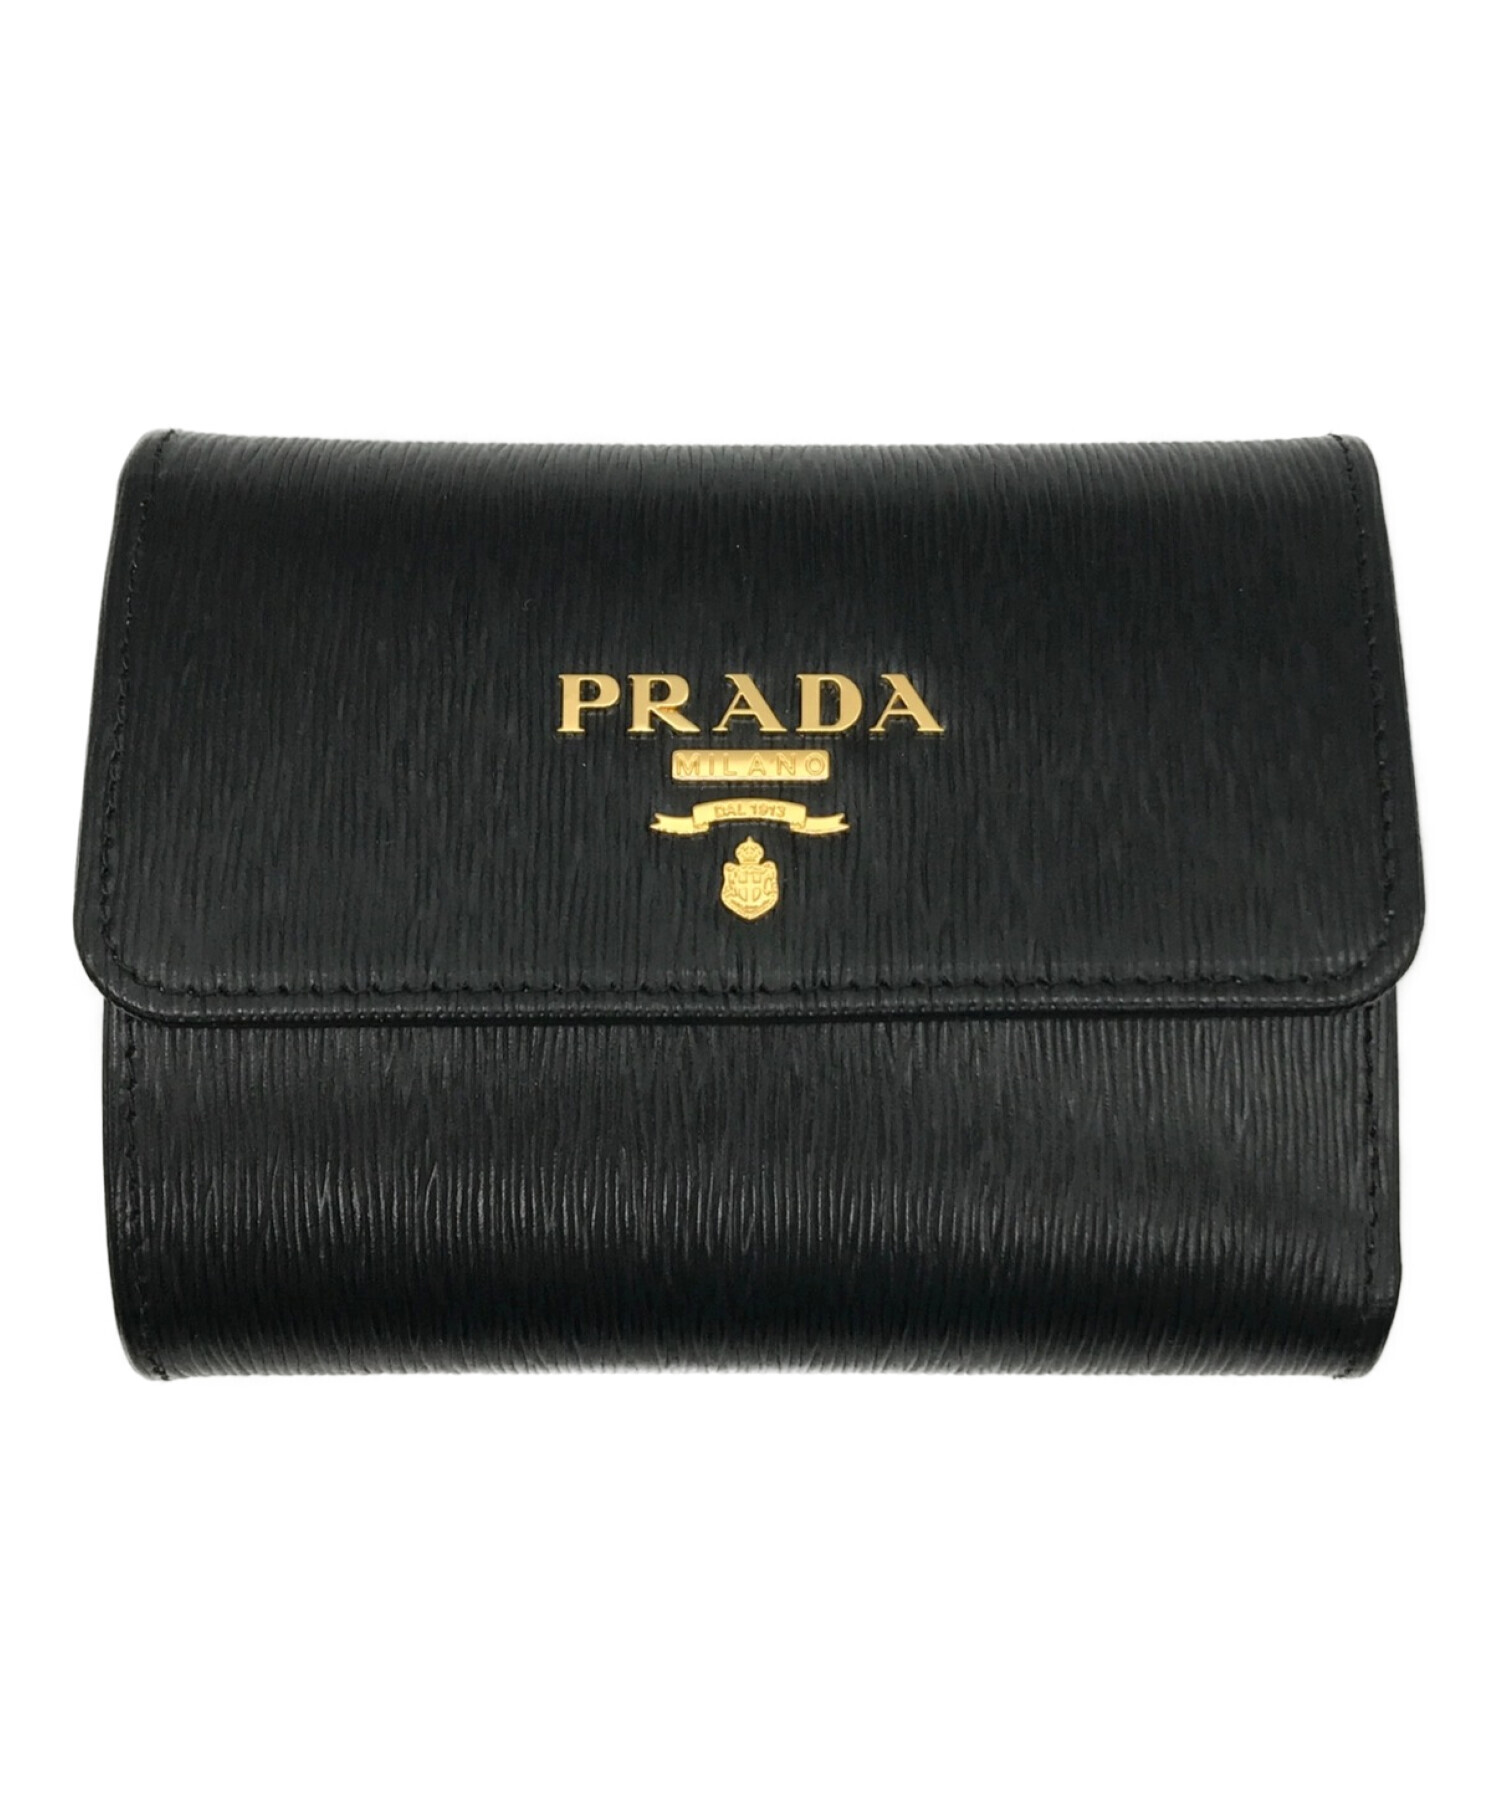 PRADA プラダ 三つ折り財布 - キーケース